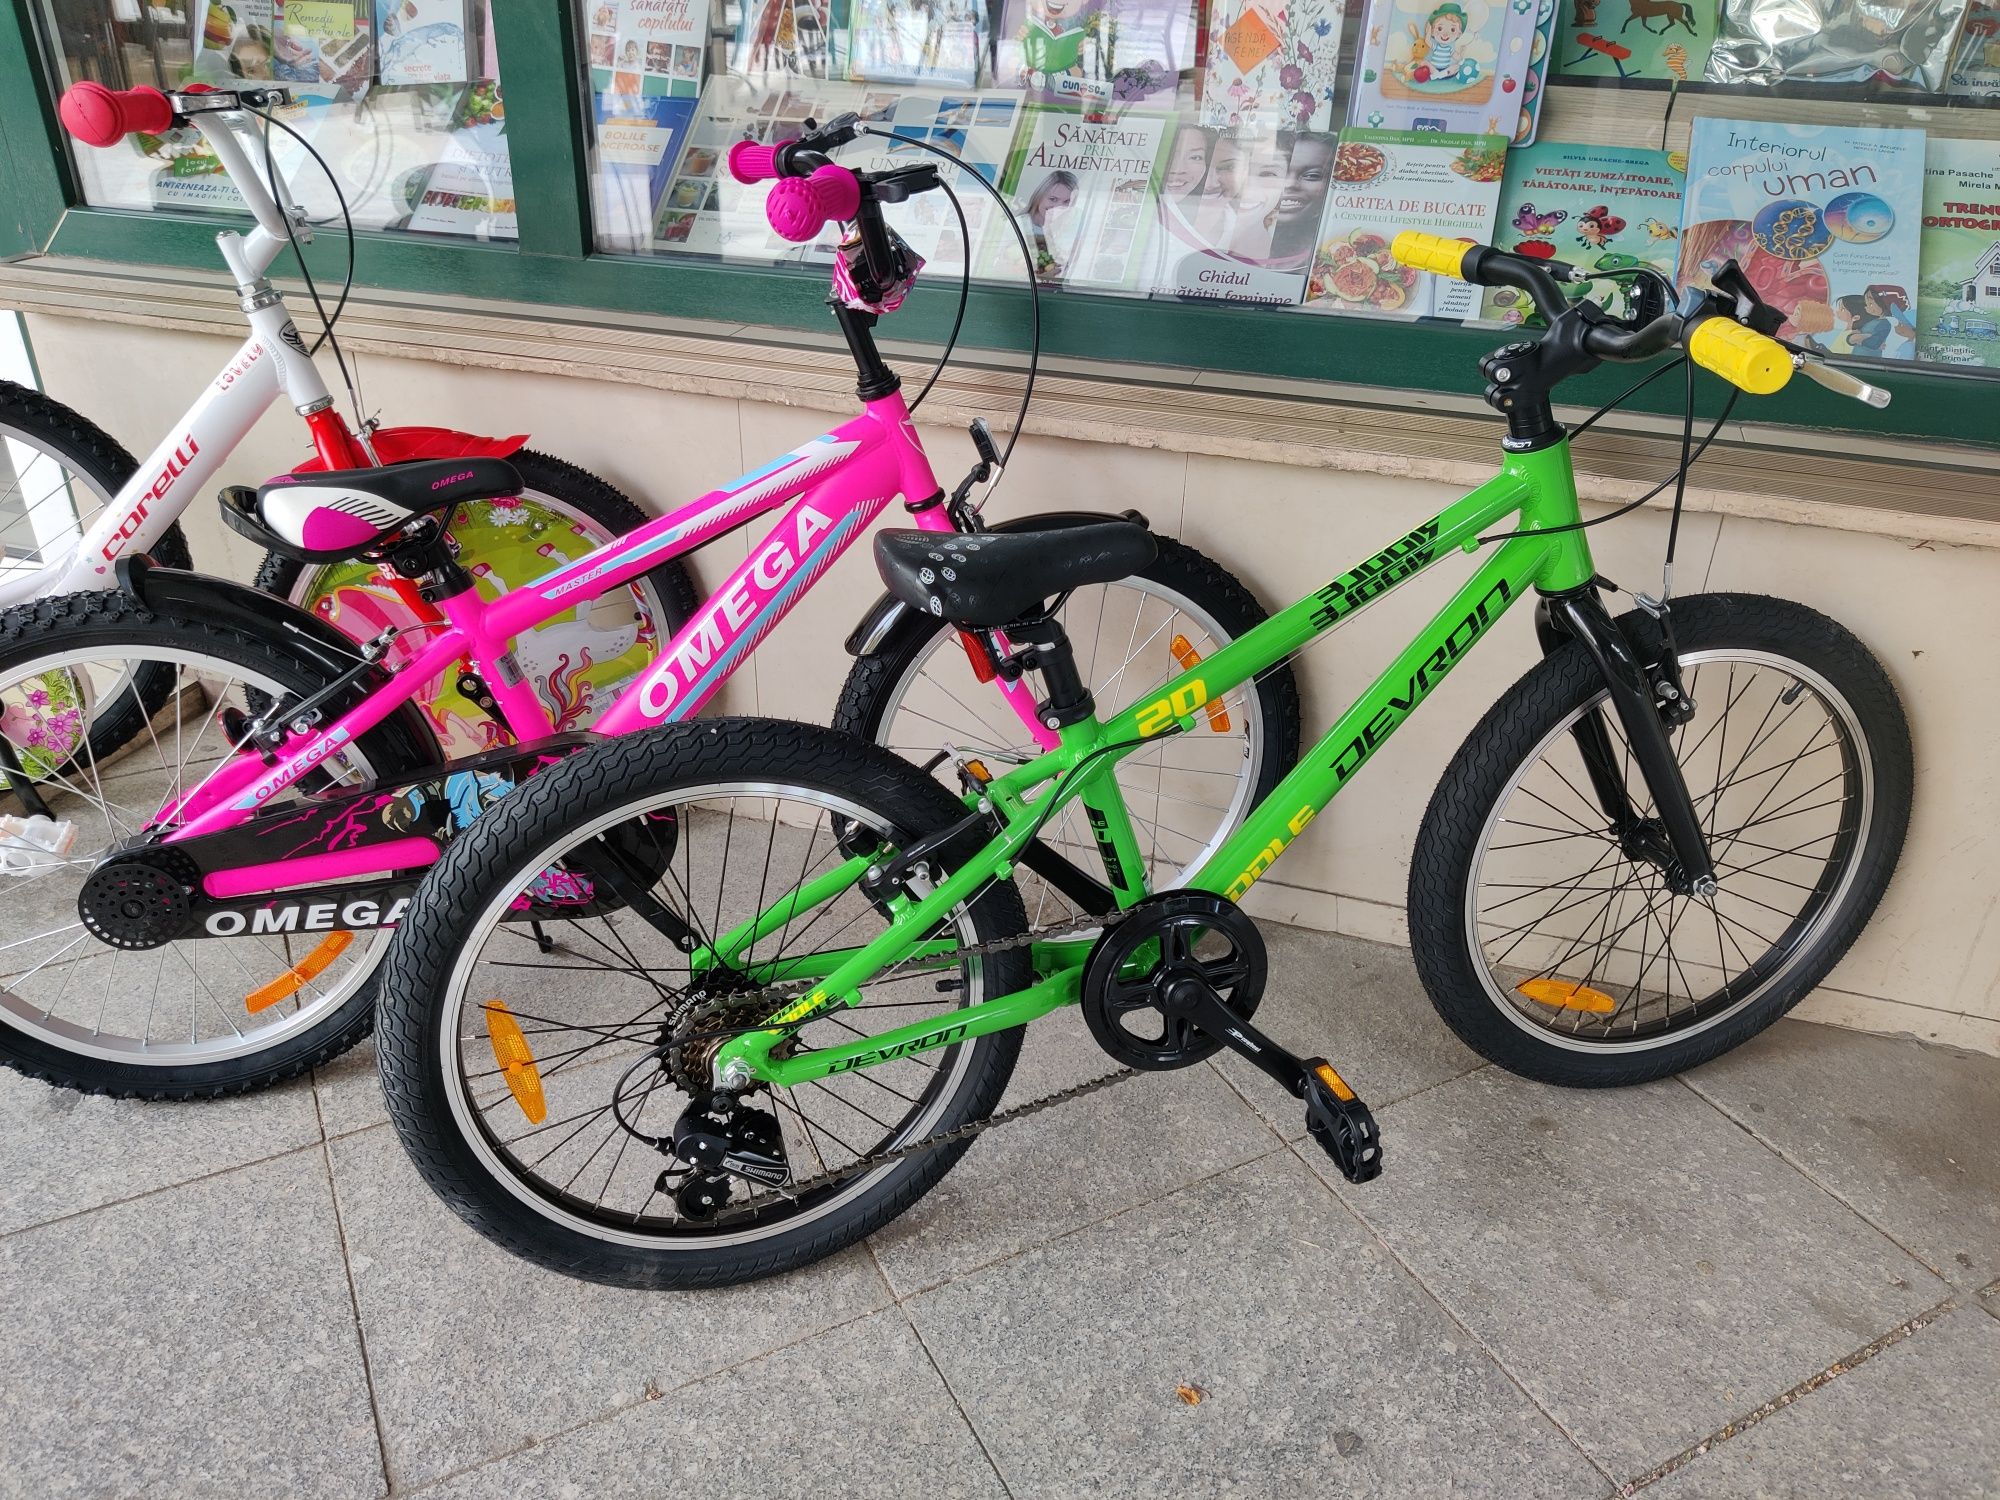 Biciclete Omega, Devron 20" pentru Copii, Mag. DELUXE Electric Focsani